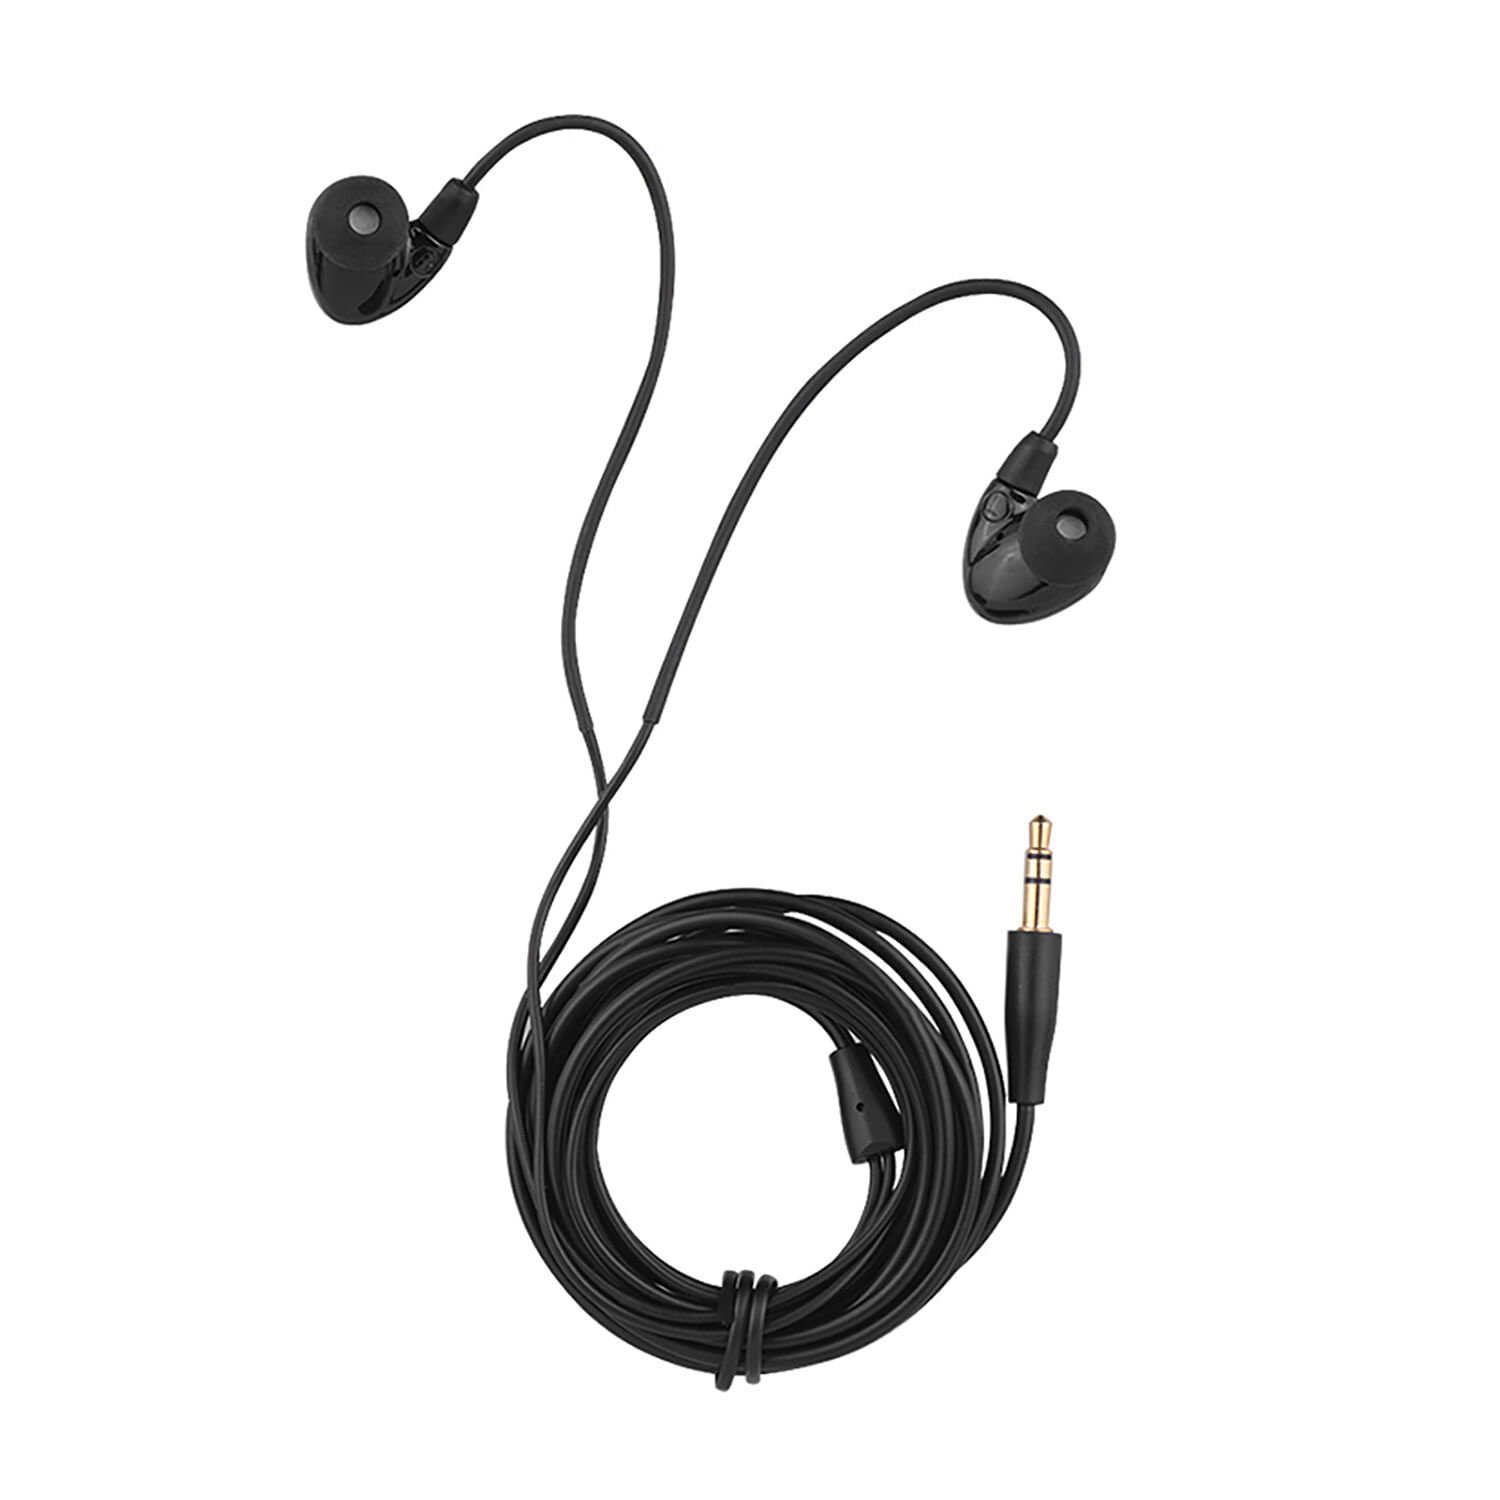 Audifonos In Ear Takstar Ts-2260 Con Cable Cancelación De Ruido Negro